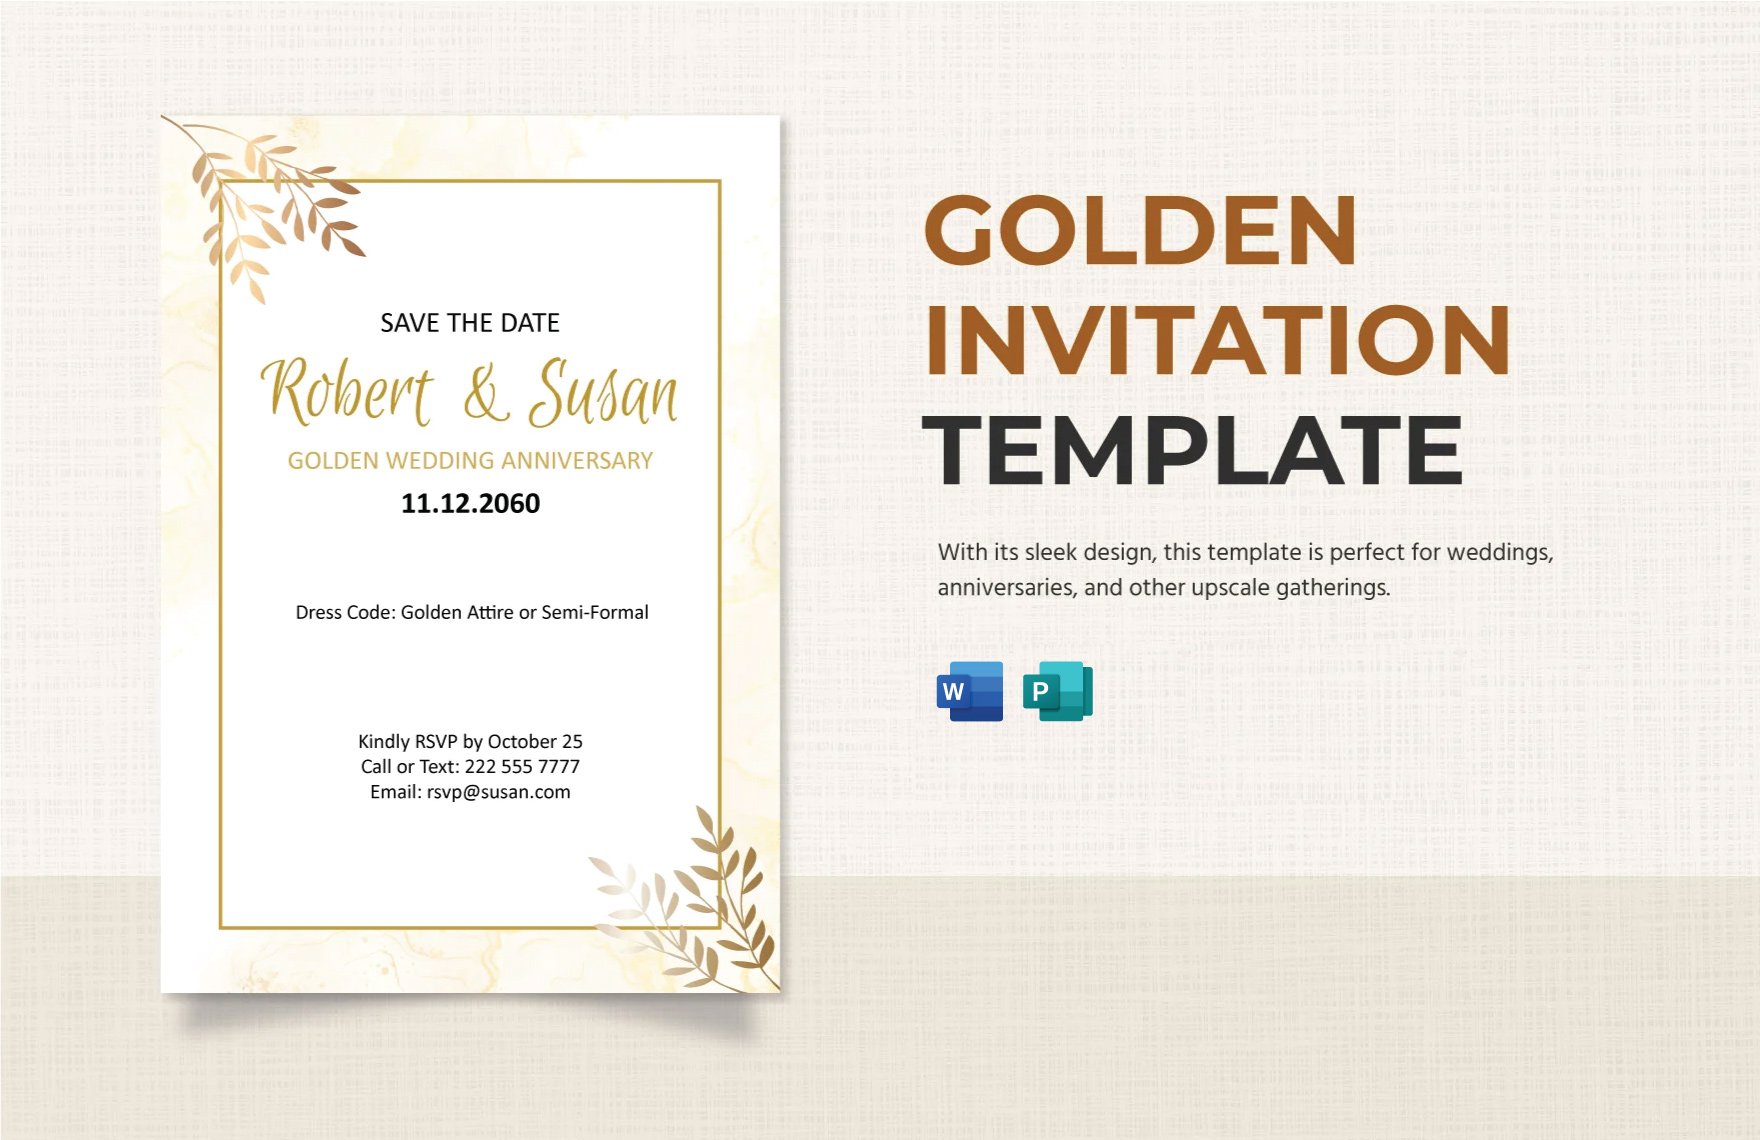 Golden Invitation Template